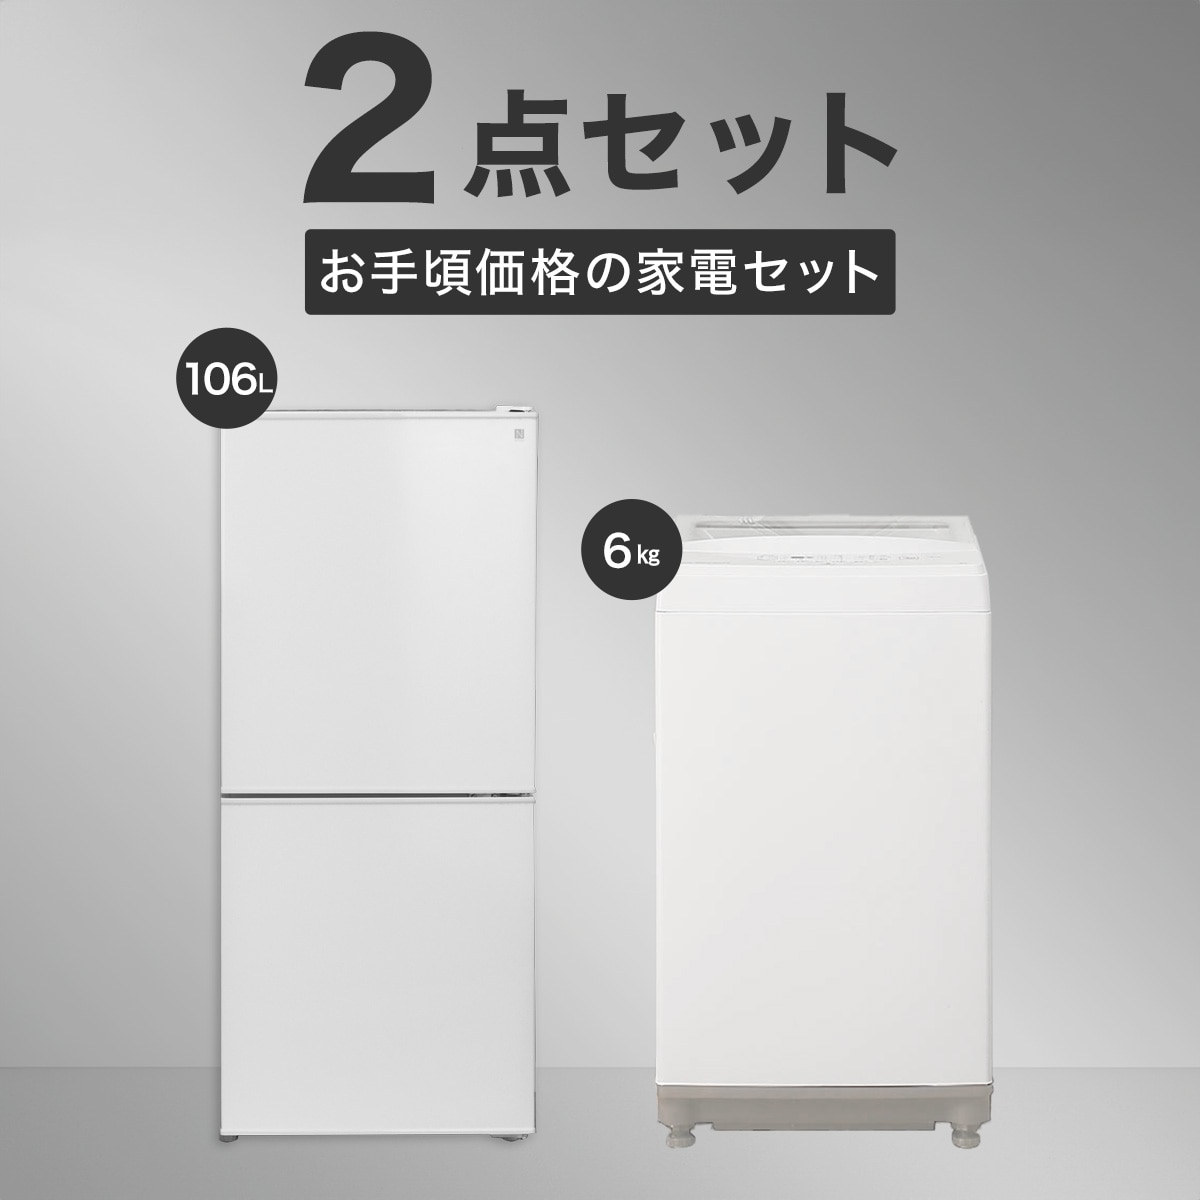 生活家電 2点セット 冷蔵庫 106L 洗濯機 5kg 1人暮し 家電 D022総合リサイクルHOUSE